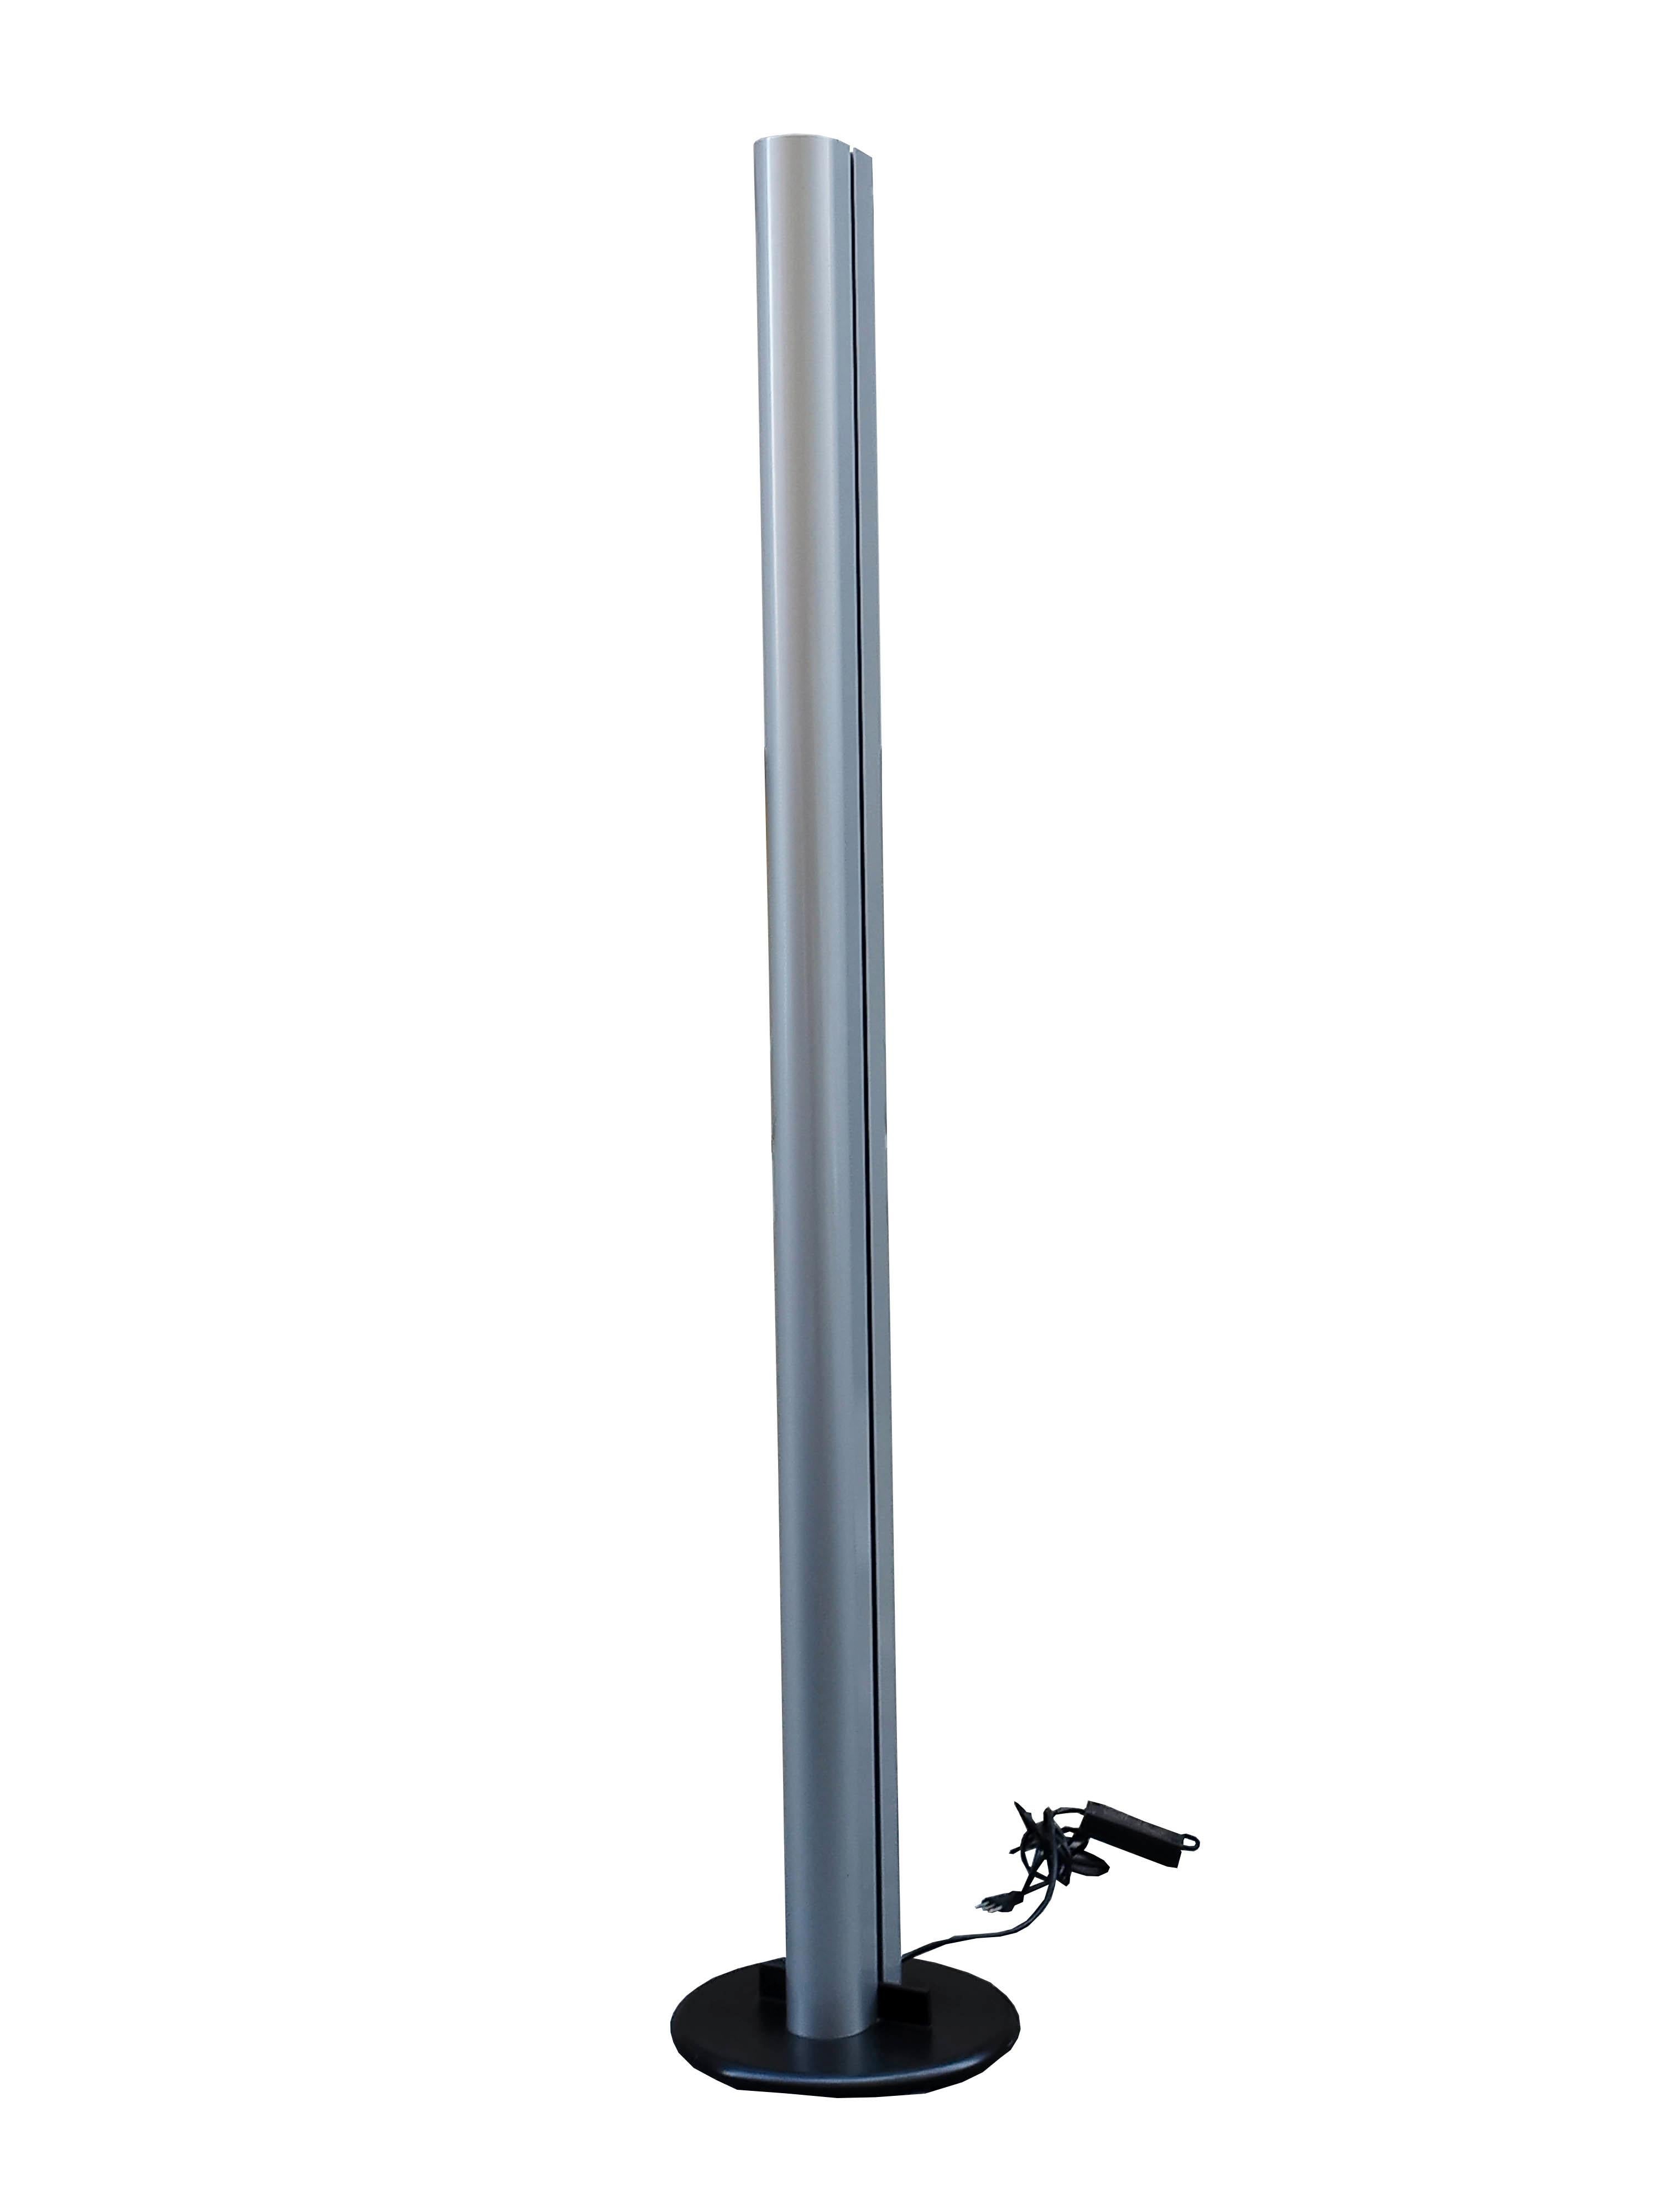 Floor lamp model Megaron by Gianfranco Frattini for Artemide in, grey laquered metal.